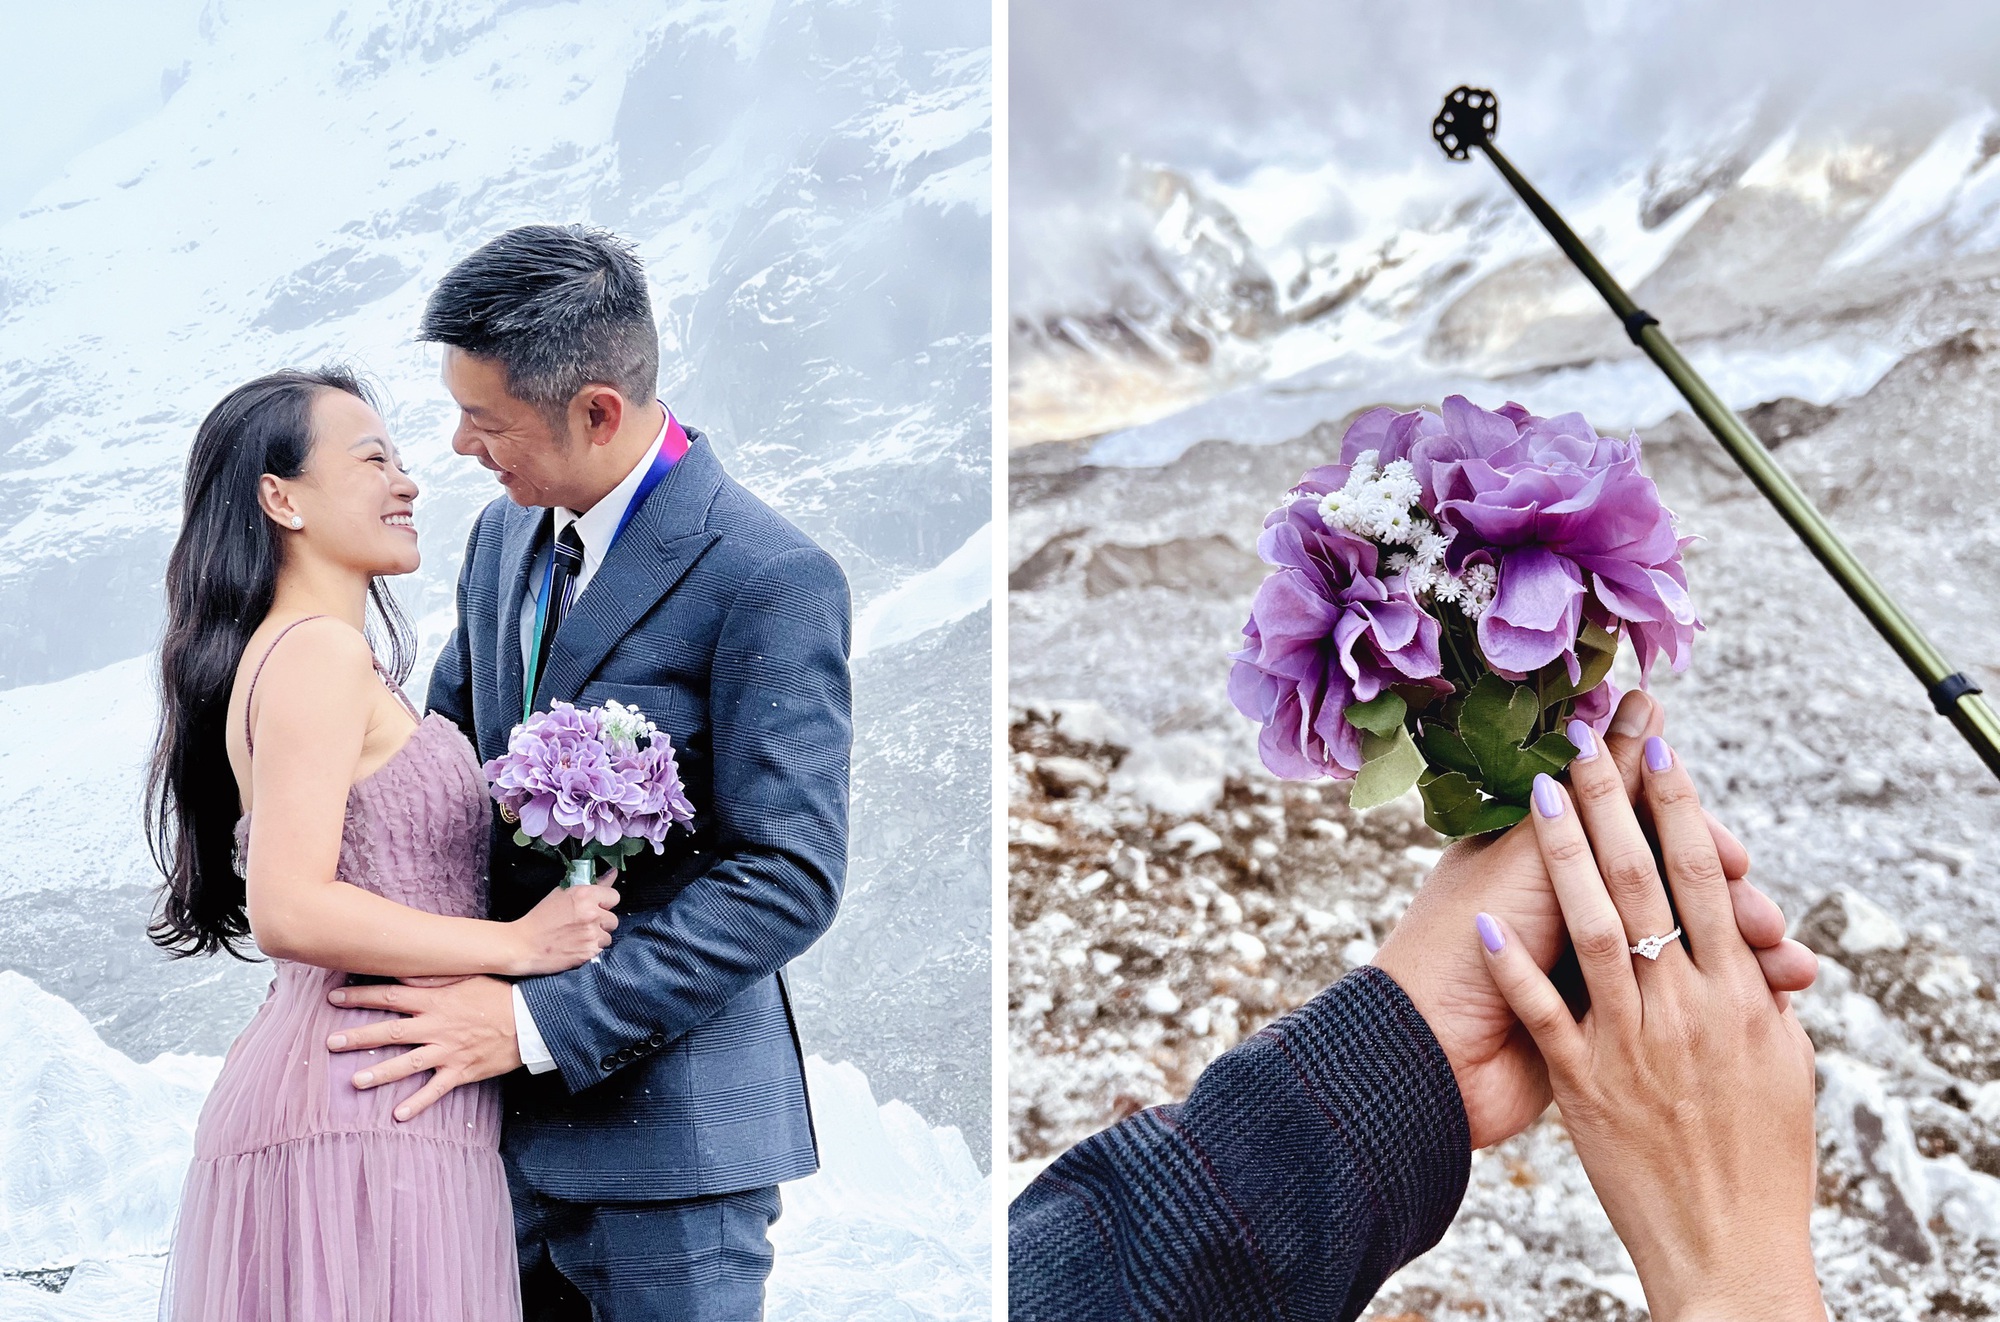 Chuyện tình lãng mạn của cặp đôi Việt cầu hôn trên Everest - Ảnh 3.